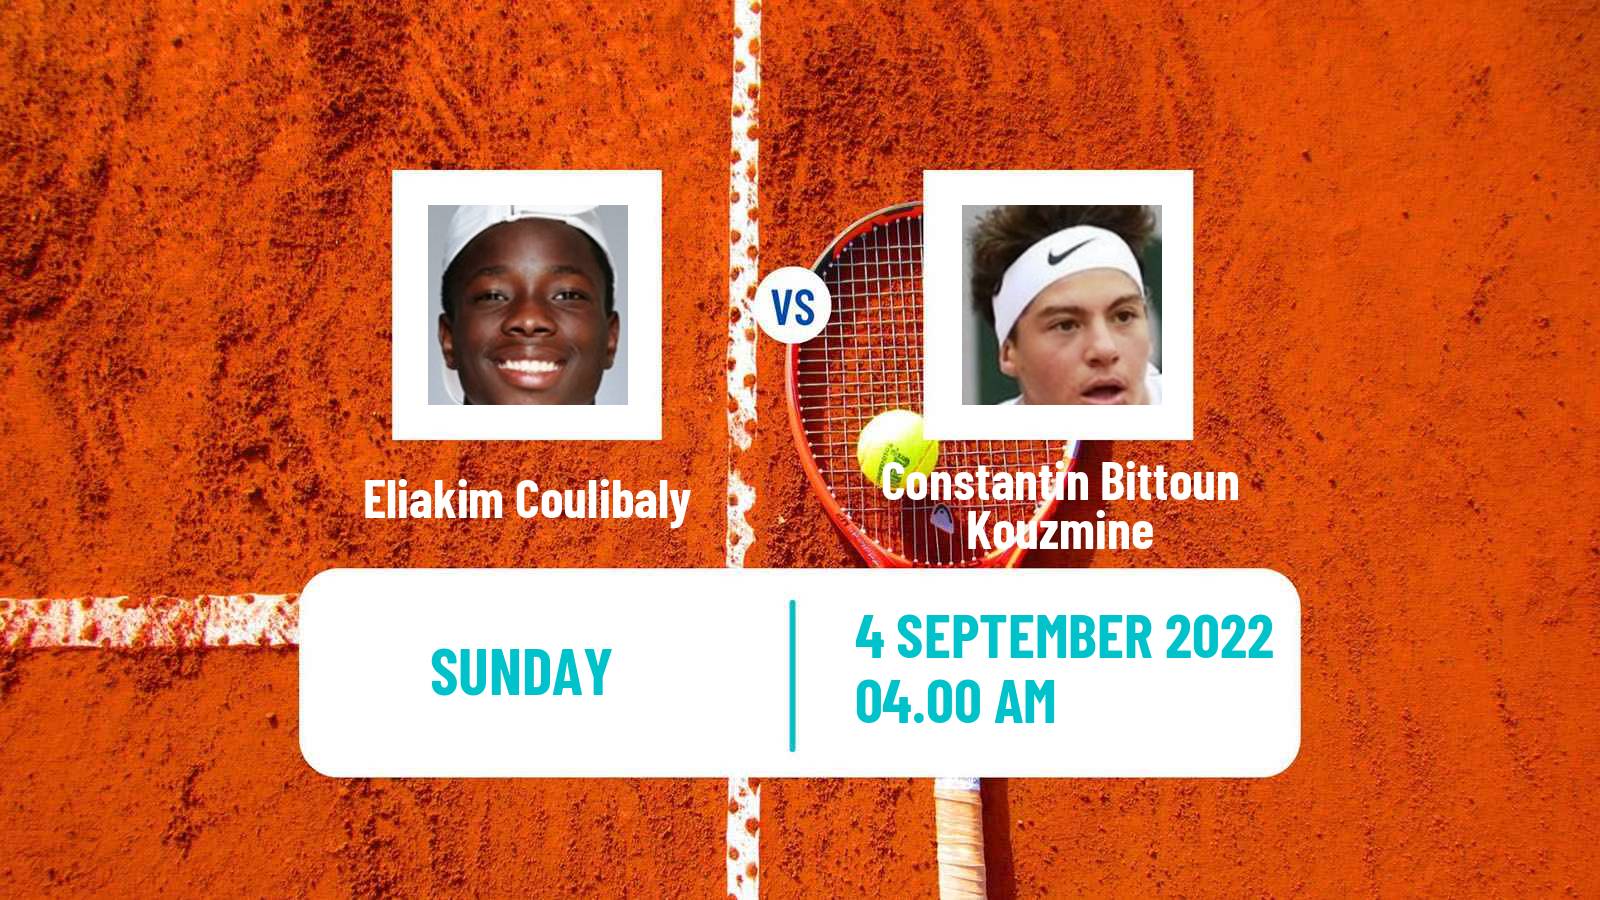 Tennis ITF Tournaments Eliakim Coulibaly - Constantin Bittoun Kouzmine